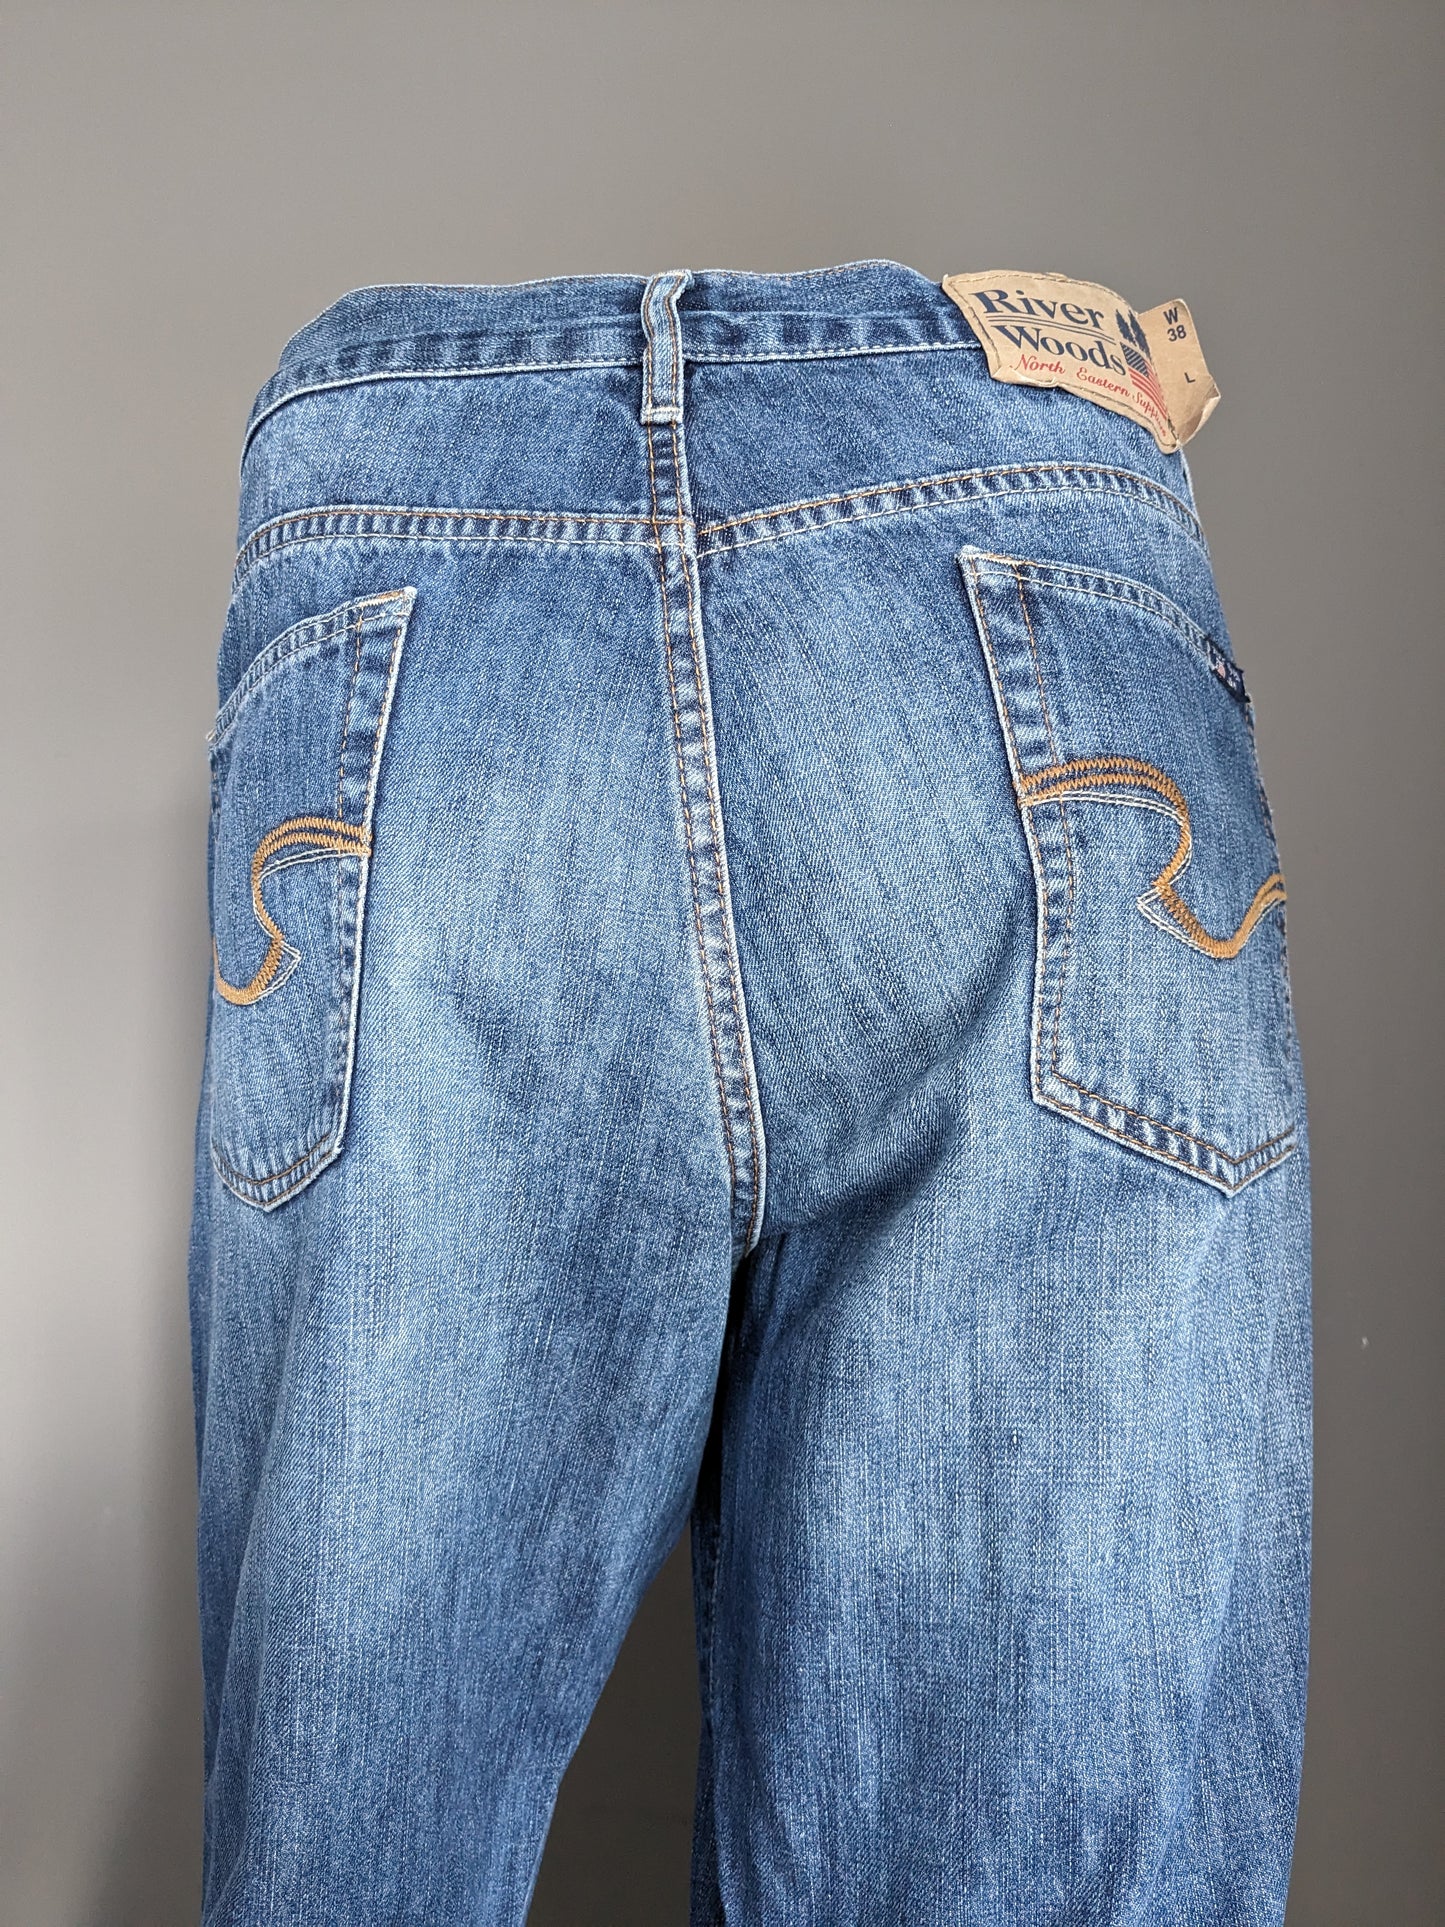 Flusswälder Jeans. Blau gefärbt. Größe W38 - L34.